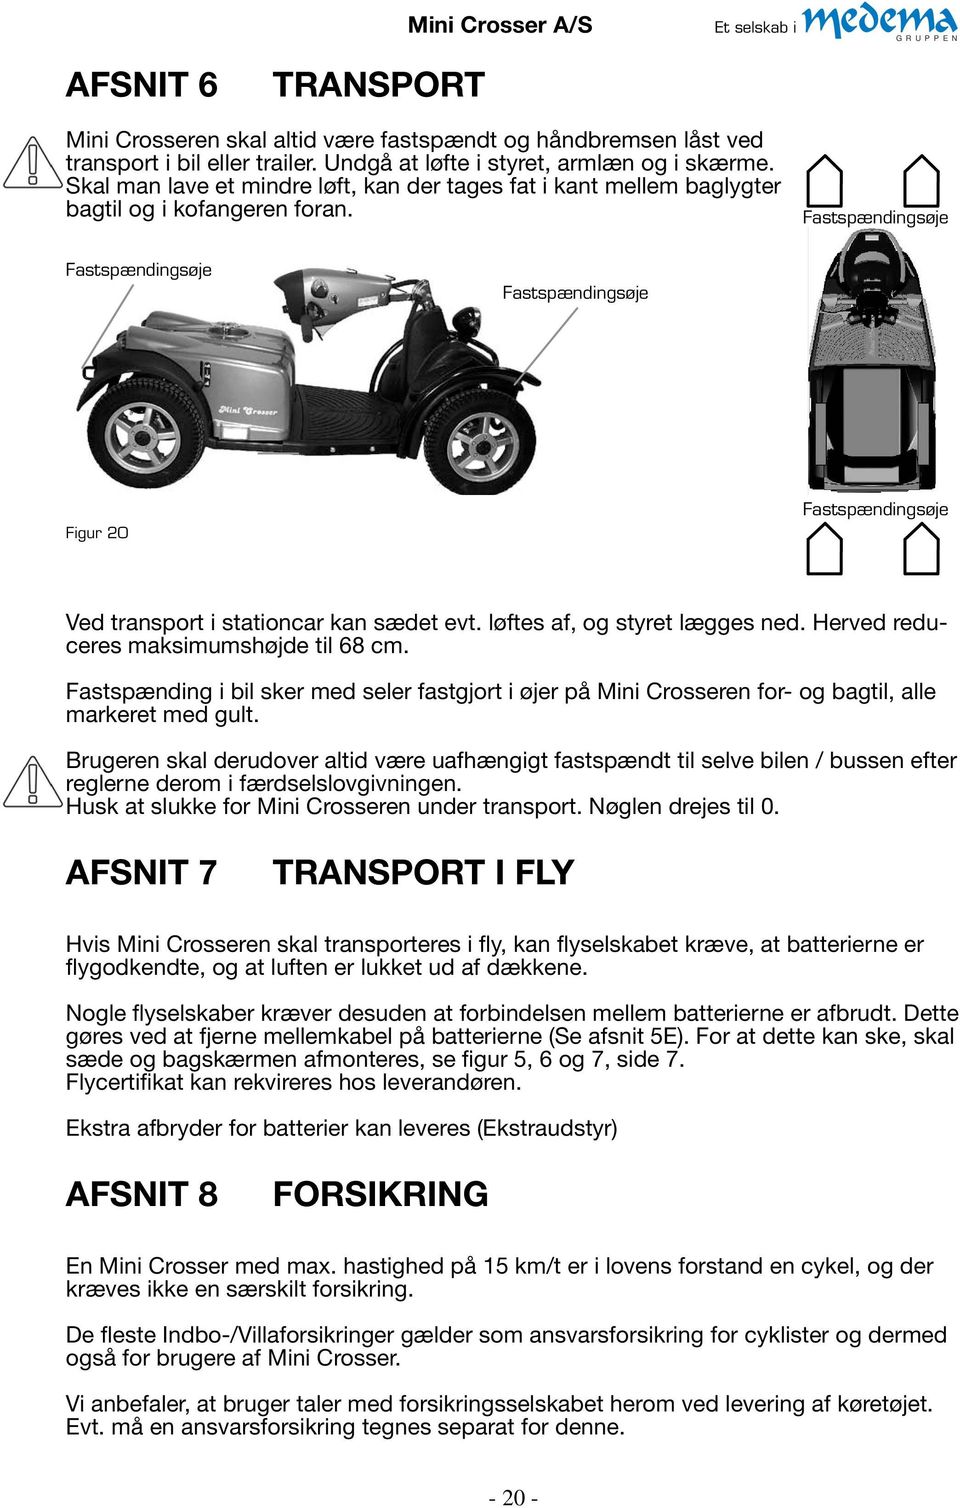 BRUGERVEJLEDNING. Mini Crosser Nordic 4W - PDF Gratis download